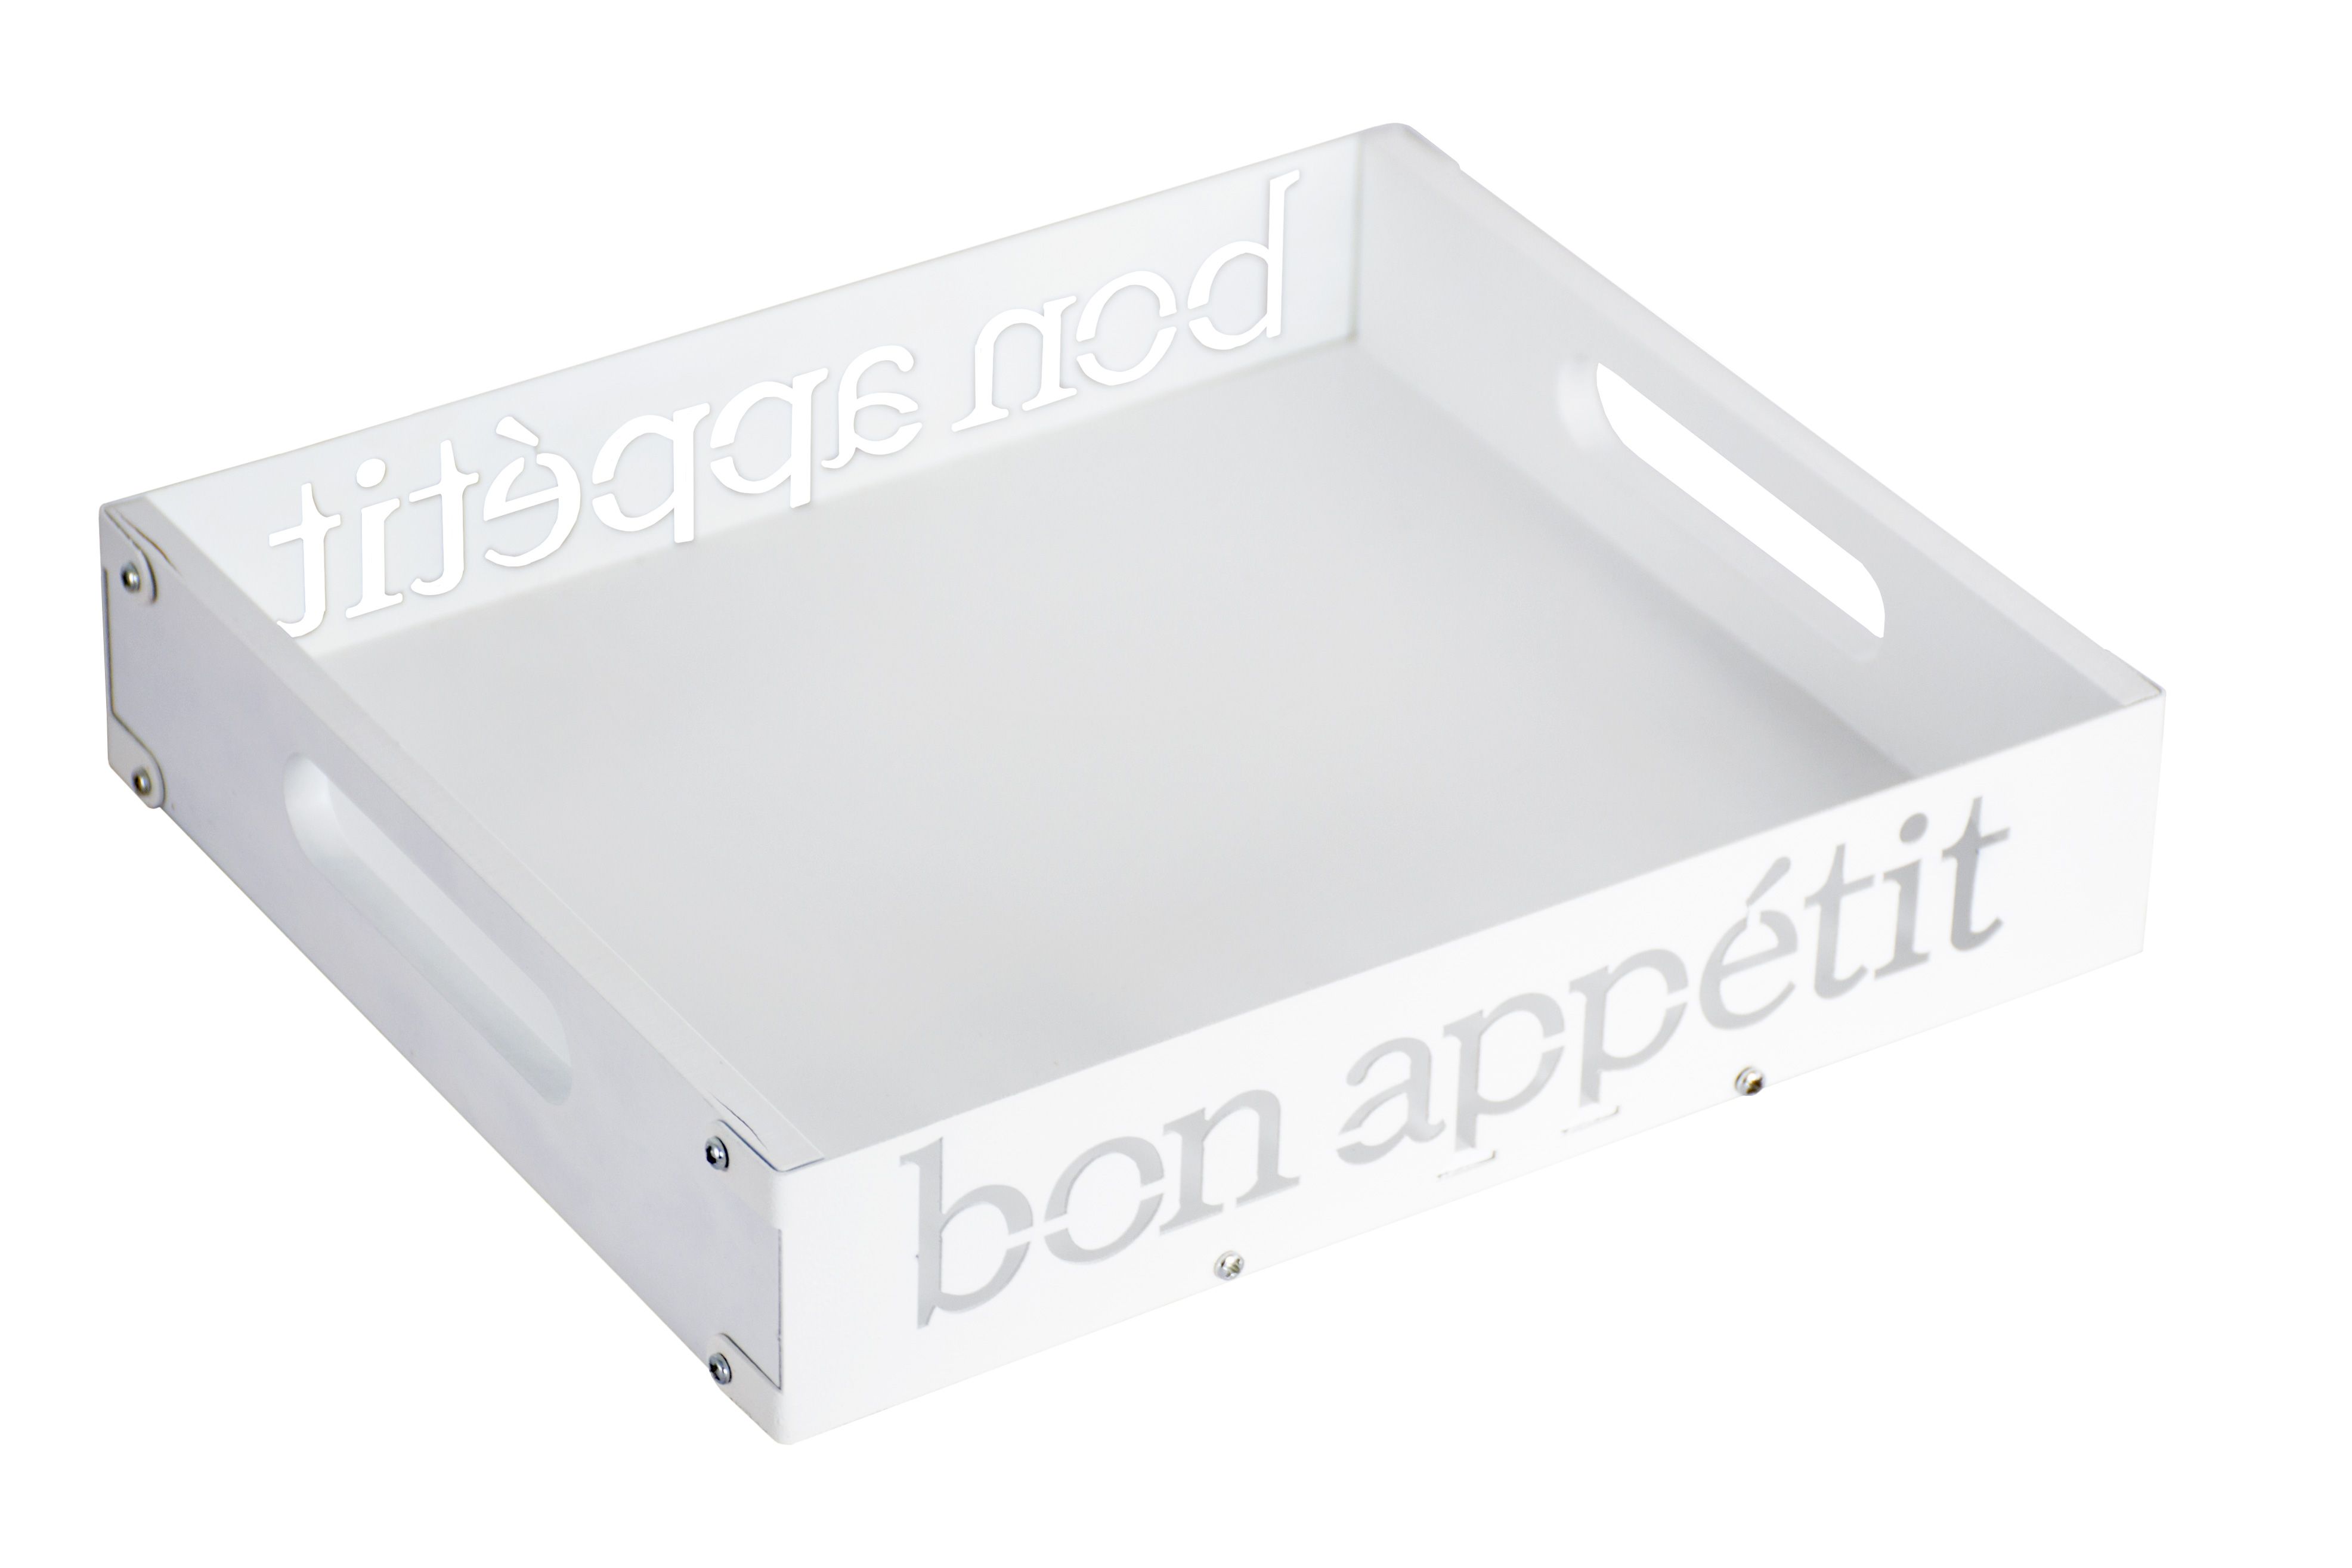 Поднос "Bon appetit" 27x20x5 см, белый, мдф/металл, KD-027-129